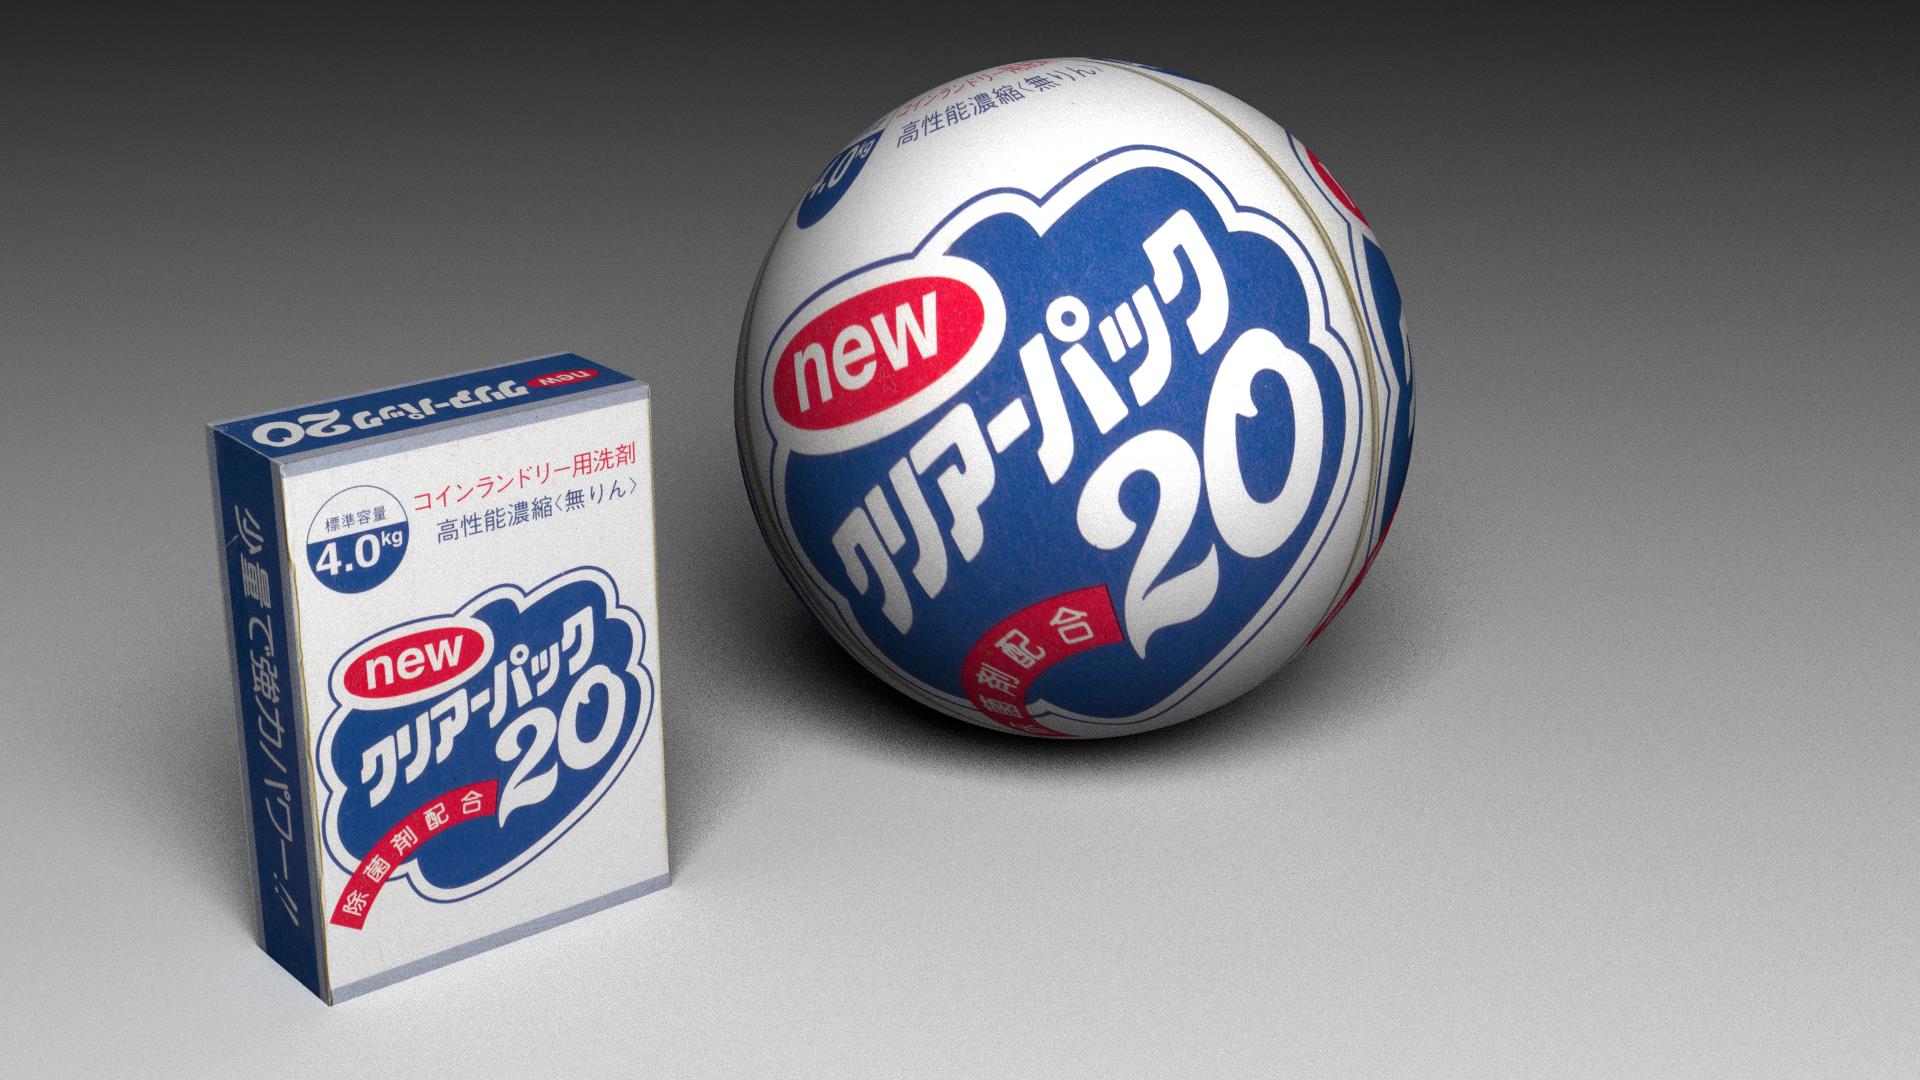 球体のコインランドリー洗濯機用洗剤「newクリアーパック20」